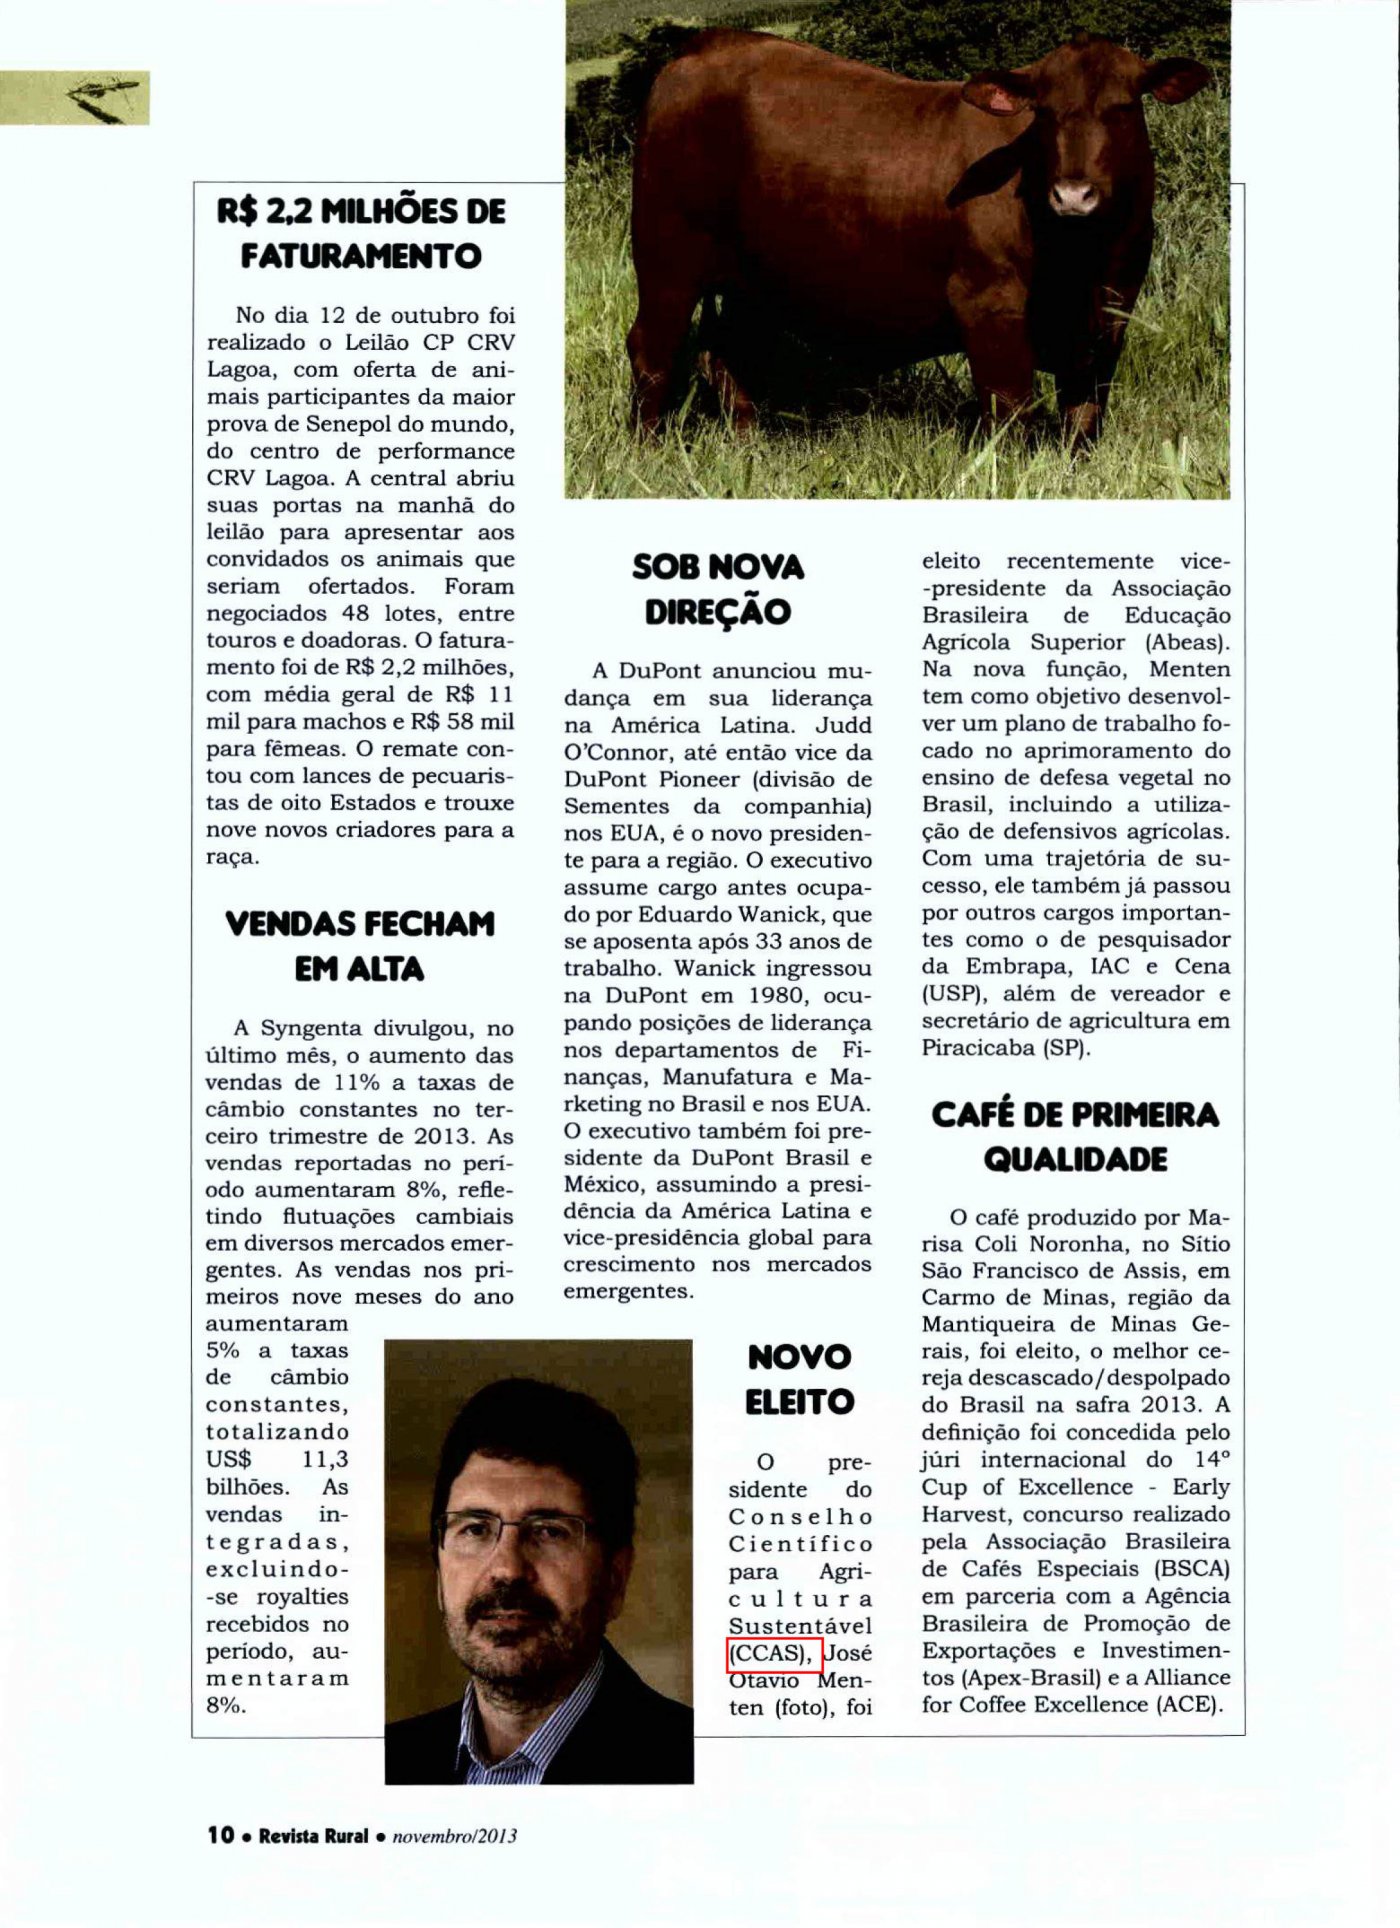 Revista Rural divulga eleição de José Otávio Menten a Vice-Presidente da Abeas